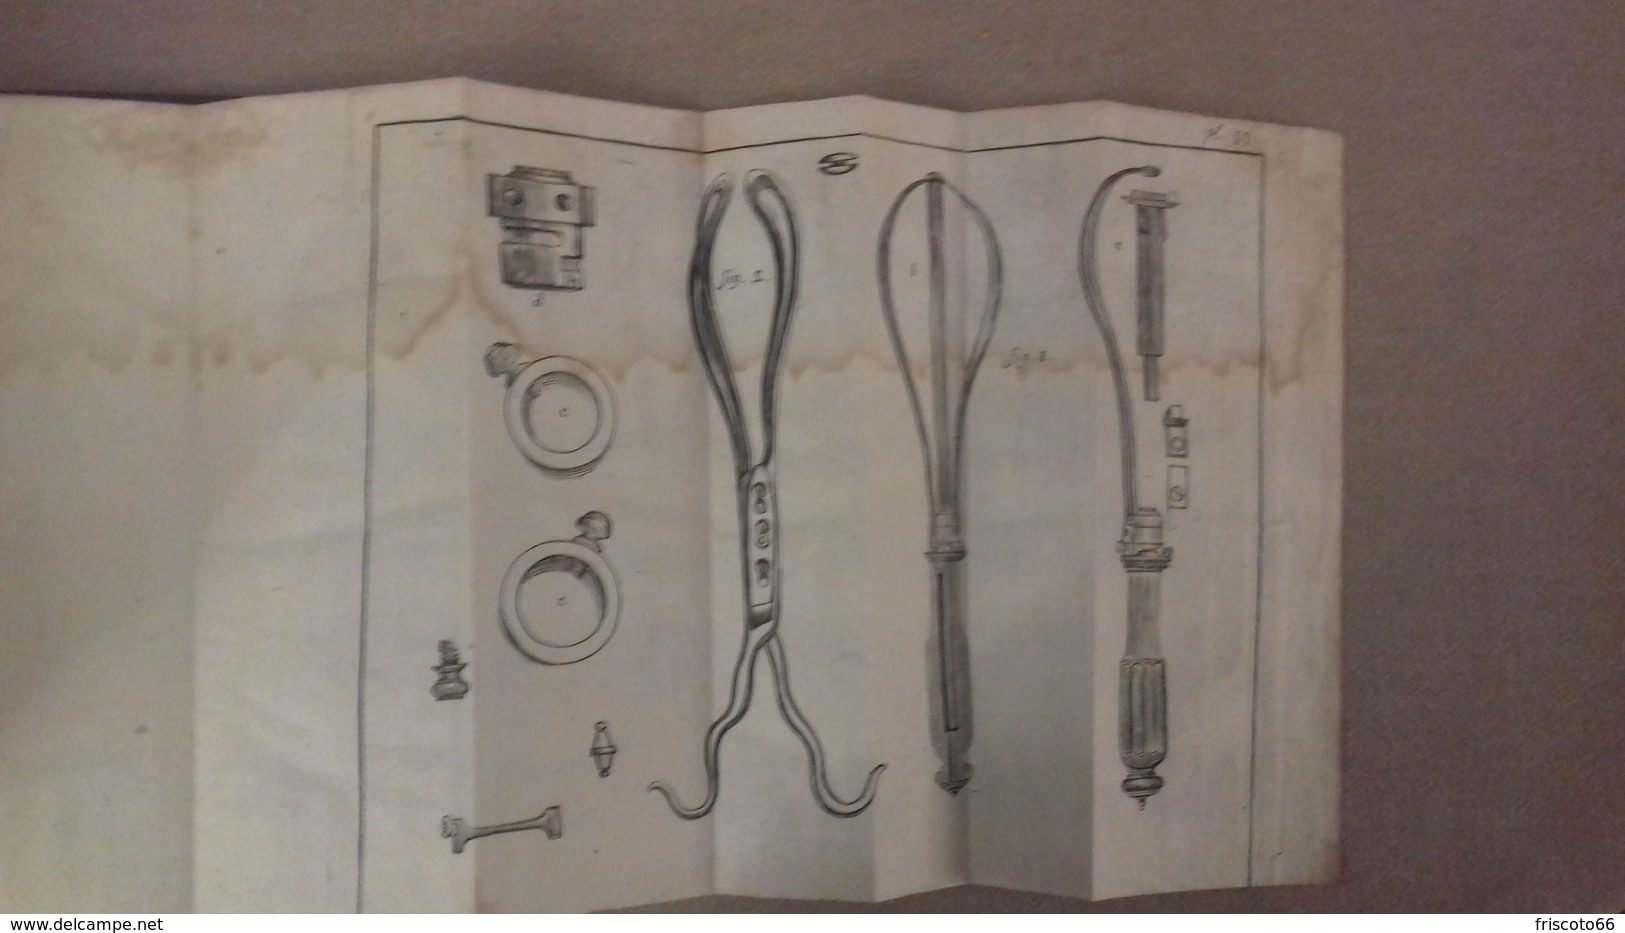 Dictionnaire de chirurgie en 2 tomes, par M Louis, à Paris chez saillant et Nyon, 1789